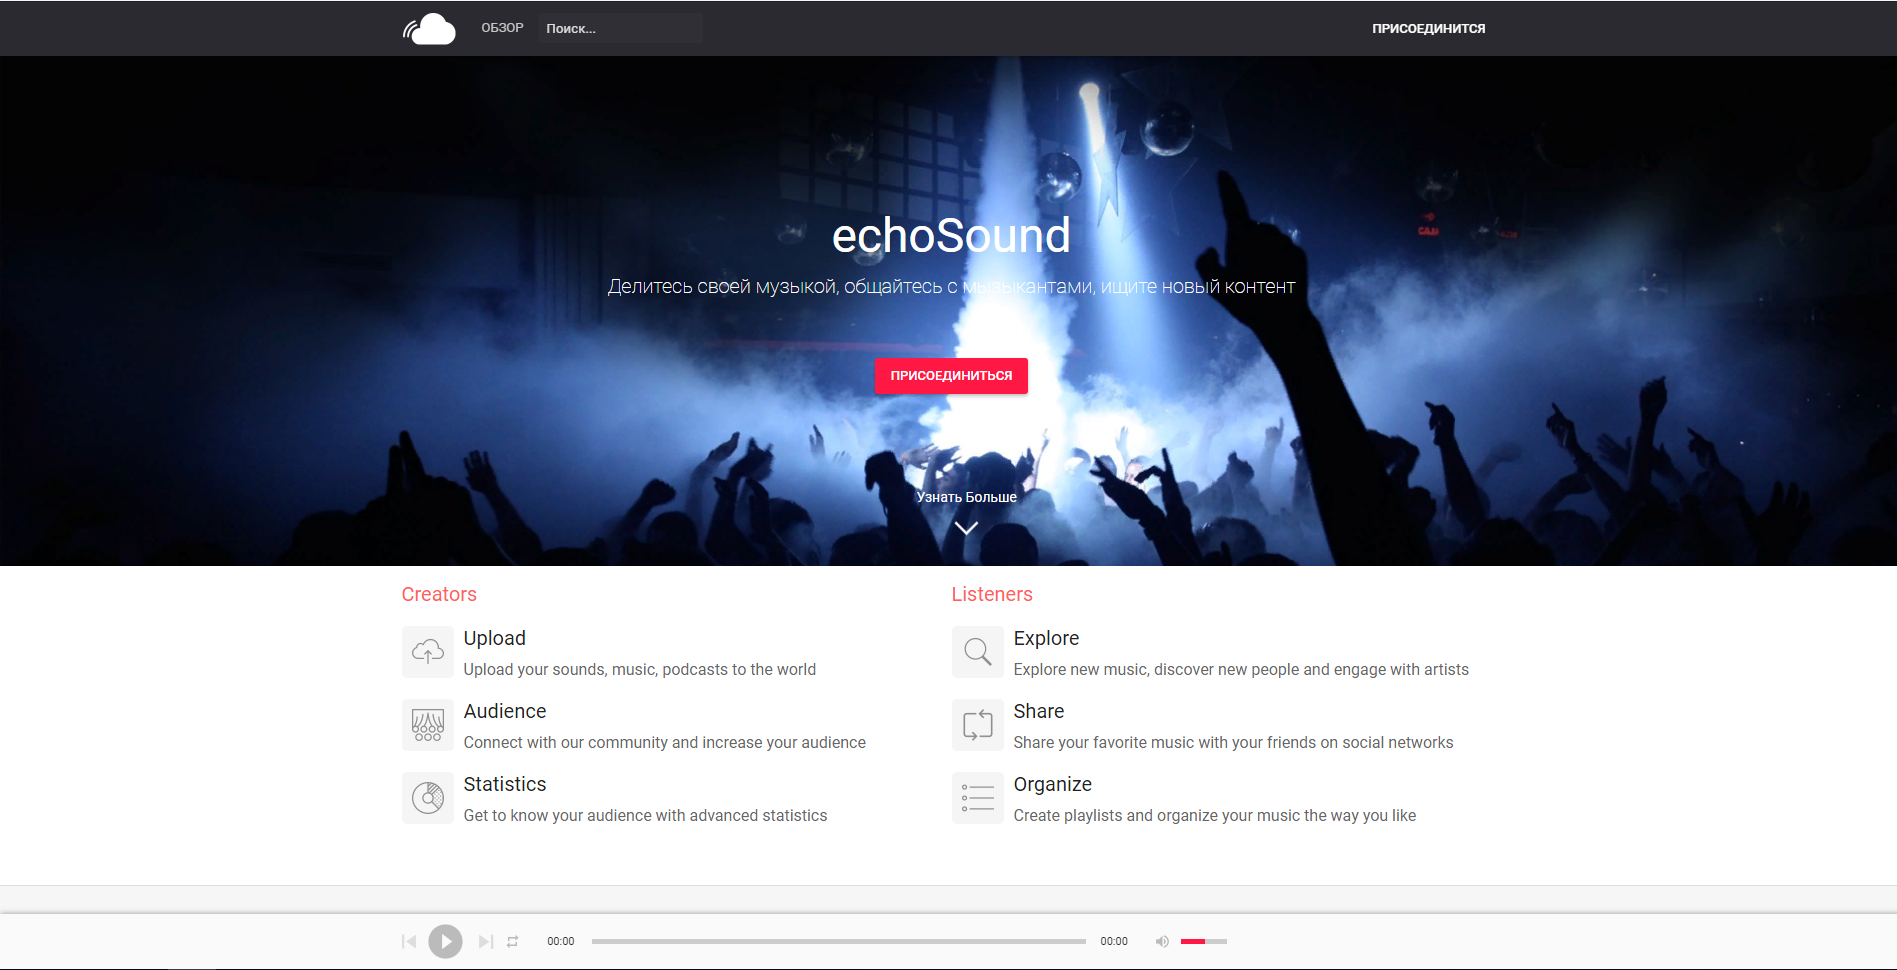 echoSound - социальная сеть и музыкальная платформа артистов